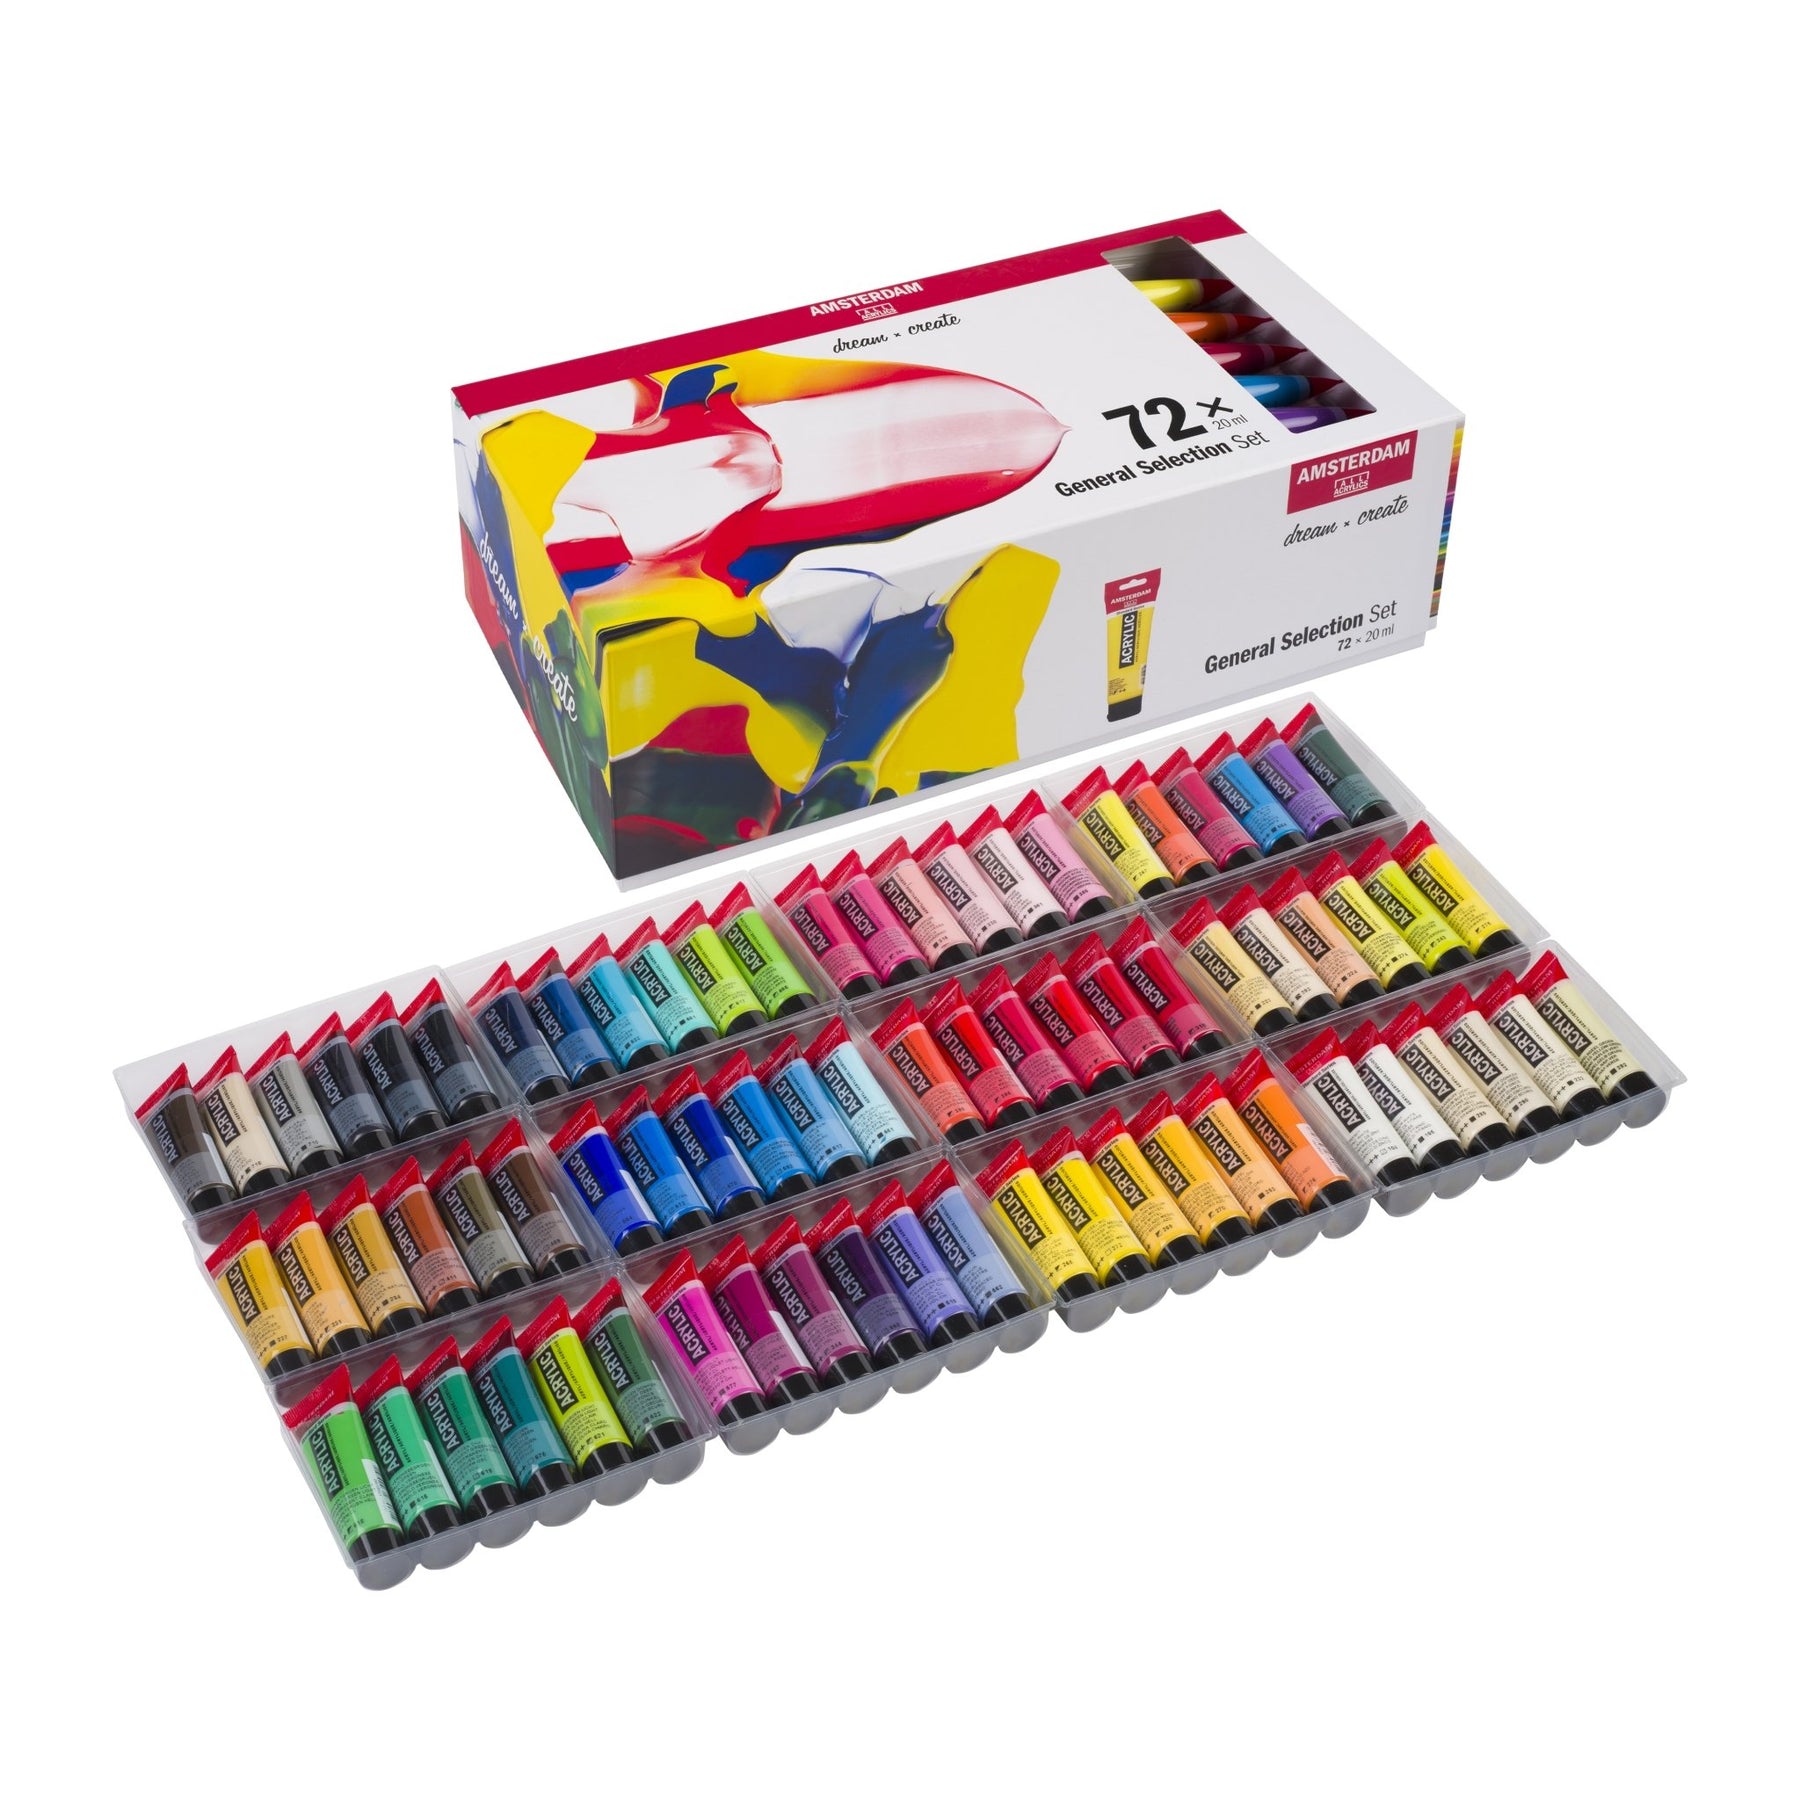 Watercolor Paint Set Kids - 72 Watercolor Paint Tubes, Watercolor Paints Paper Pad, 10 Paint Brushes - Watercolor Tubes, Watercolor Paint Kit for